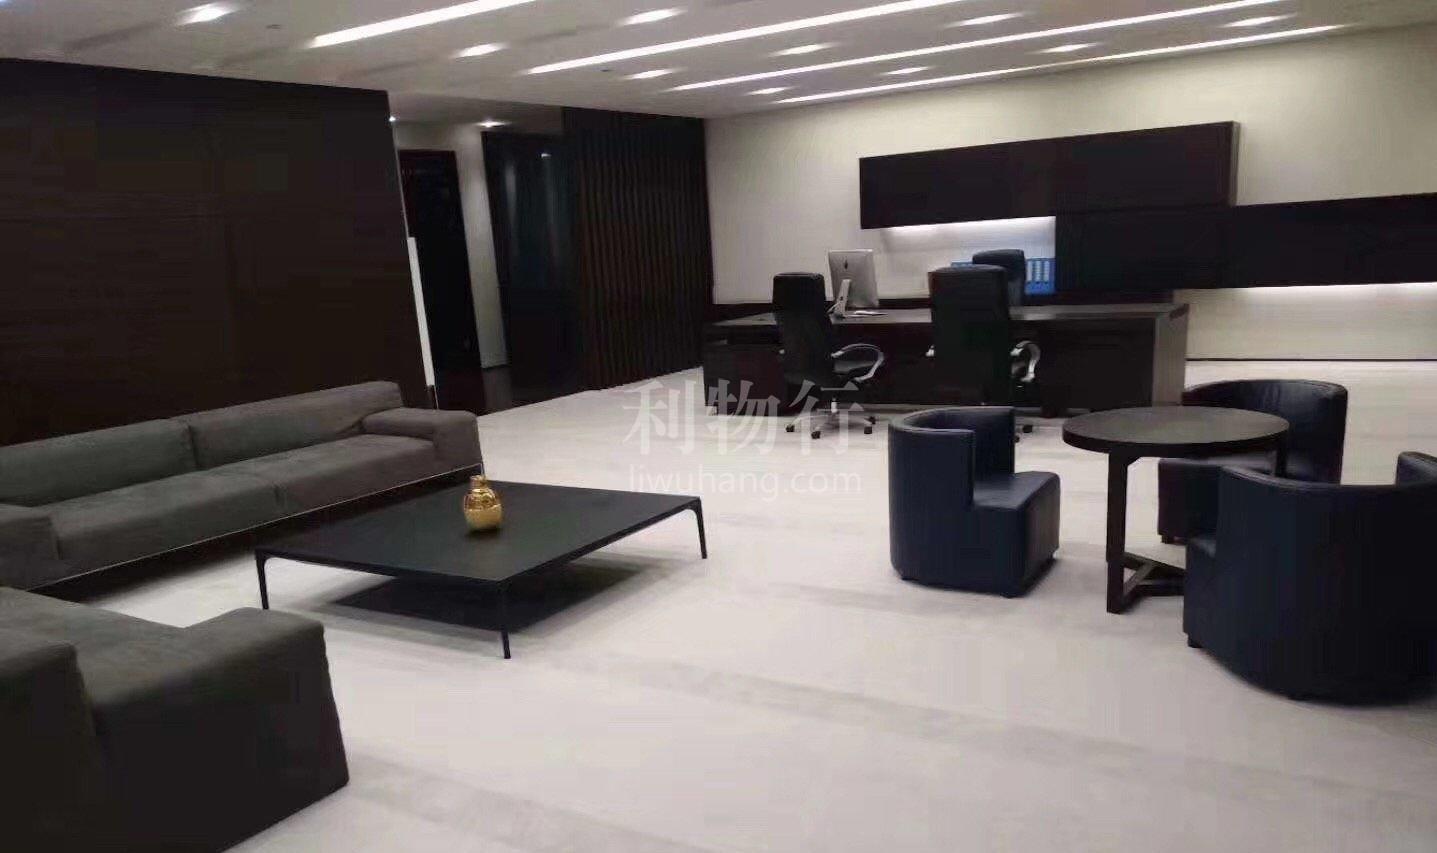 上海环球金融中心写字楼755m2办公室10.0元/m2/天 中等装修